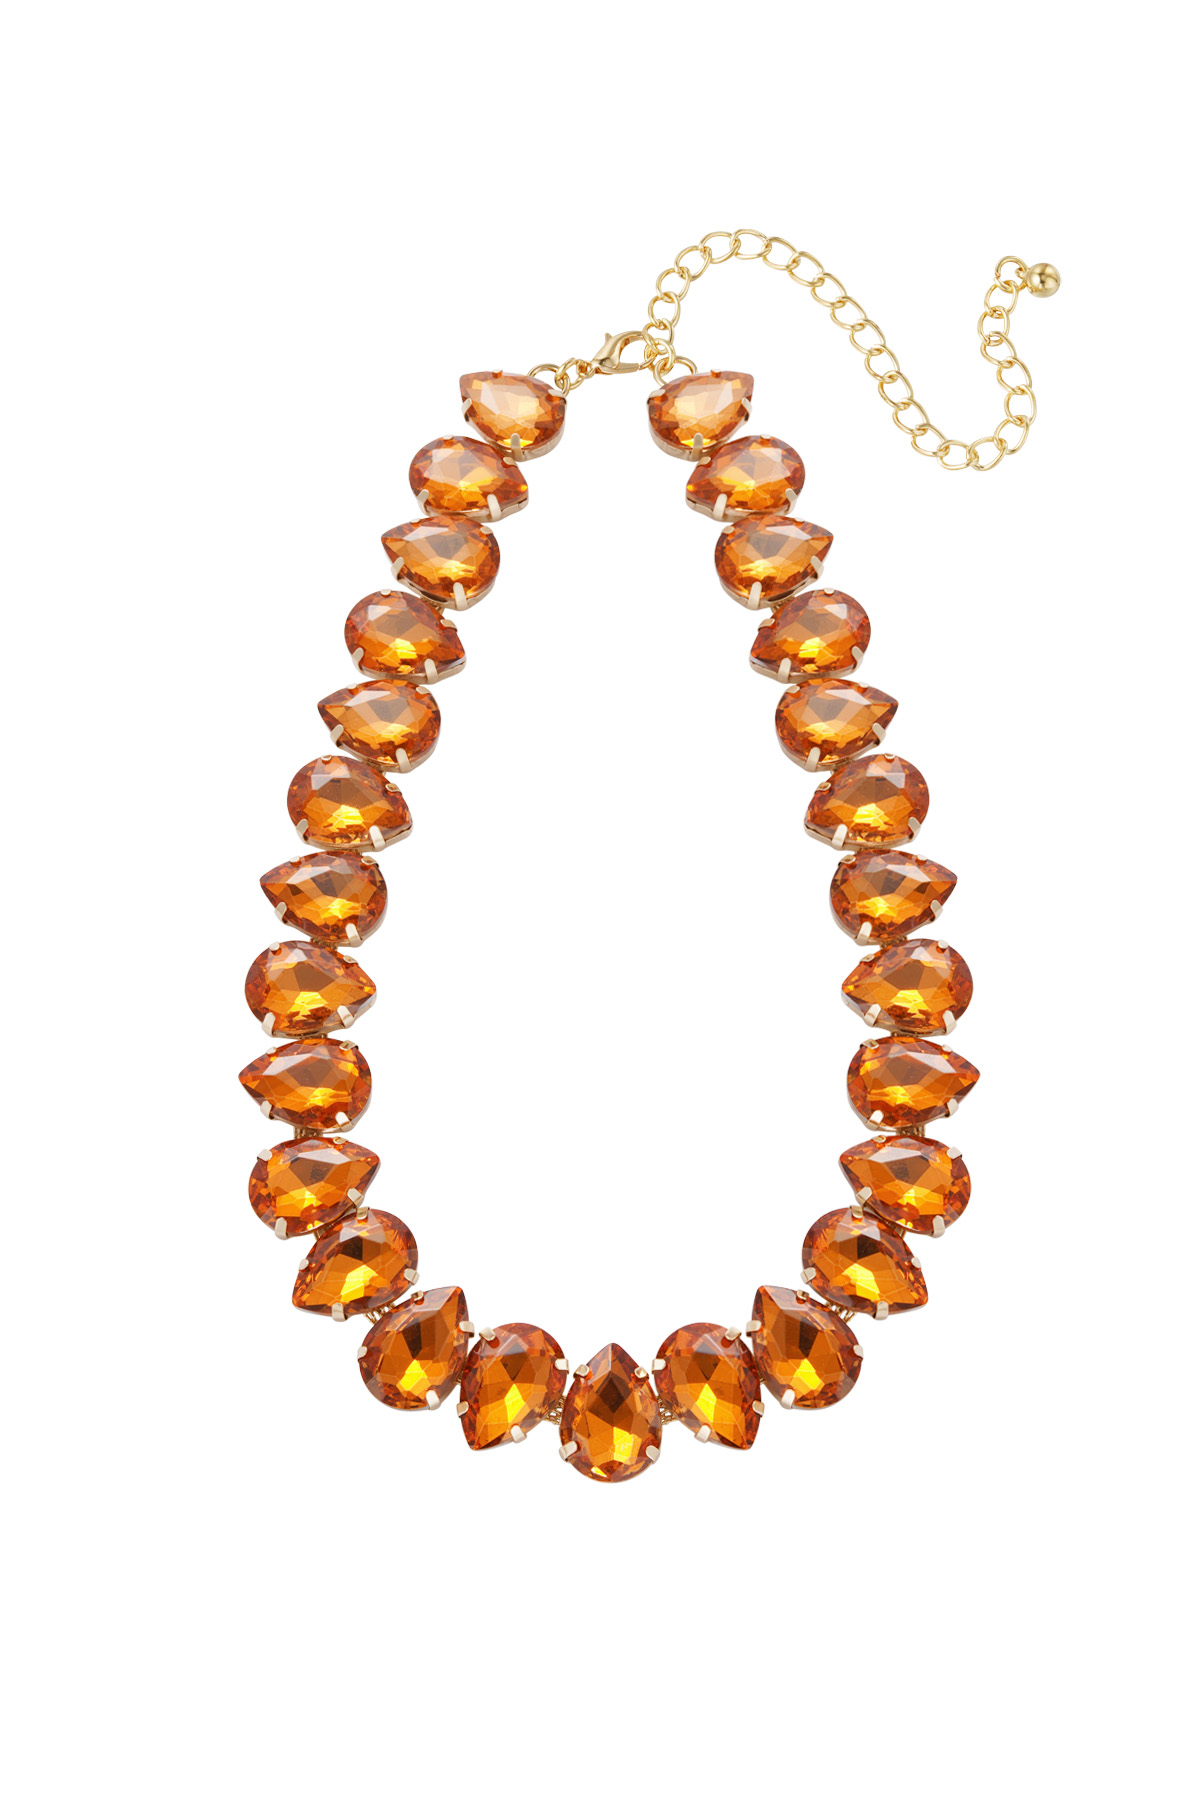 Necklace large beads - orange